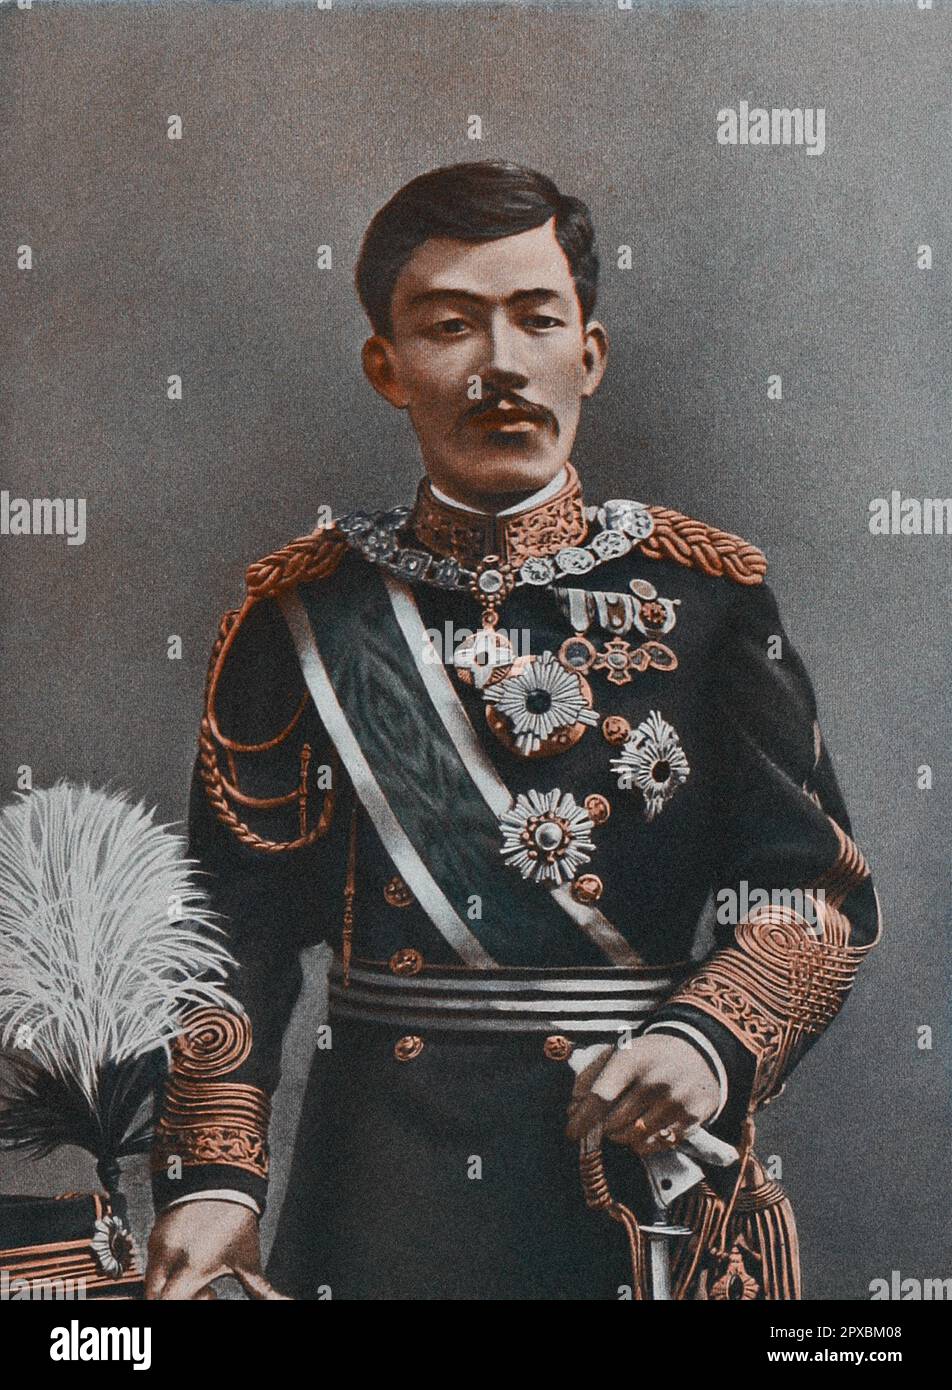 L'imperatore giapponese Yoshihito (imperatore Taishō). L'imperatore Taishō (Taishō-tennō, 1879 – 1926), noto anche con il suo nome personale Yoshihito, fu il 123rd° imperatore del Giappone, secondo il tradizionale ordine di successione, e il secondo sovrano dell'Impero del Giappone dal 30 luglio 1912 fino alla sua morte nel 1926. Secondo l'usanza giapponese, mentre regna l'Imperatore è semplicemente chiamato 'l'Imperatore'. Dopo la morte, è conosciuto con un nome postumo, che è il nome dell'epoca che coincide con il suo regno. Dopo aver governato durante l'era di Taishō, è conosciuto come l'imperatore Taishō. Foto Stock